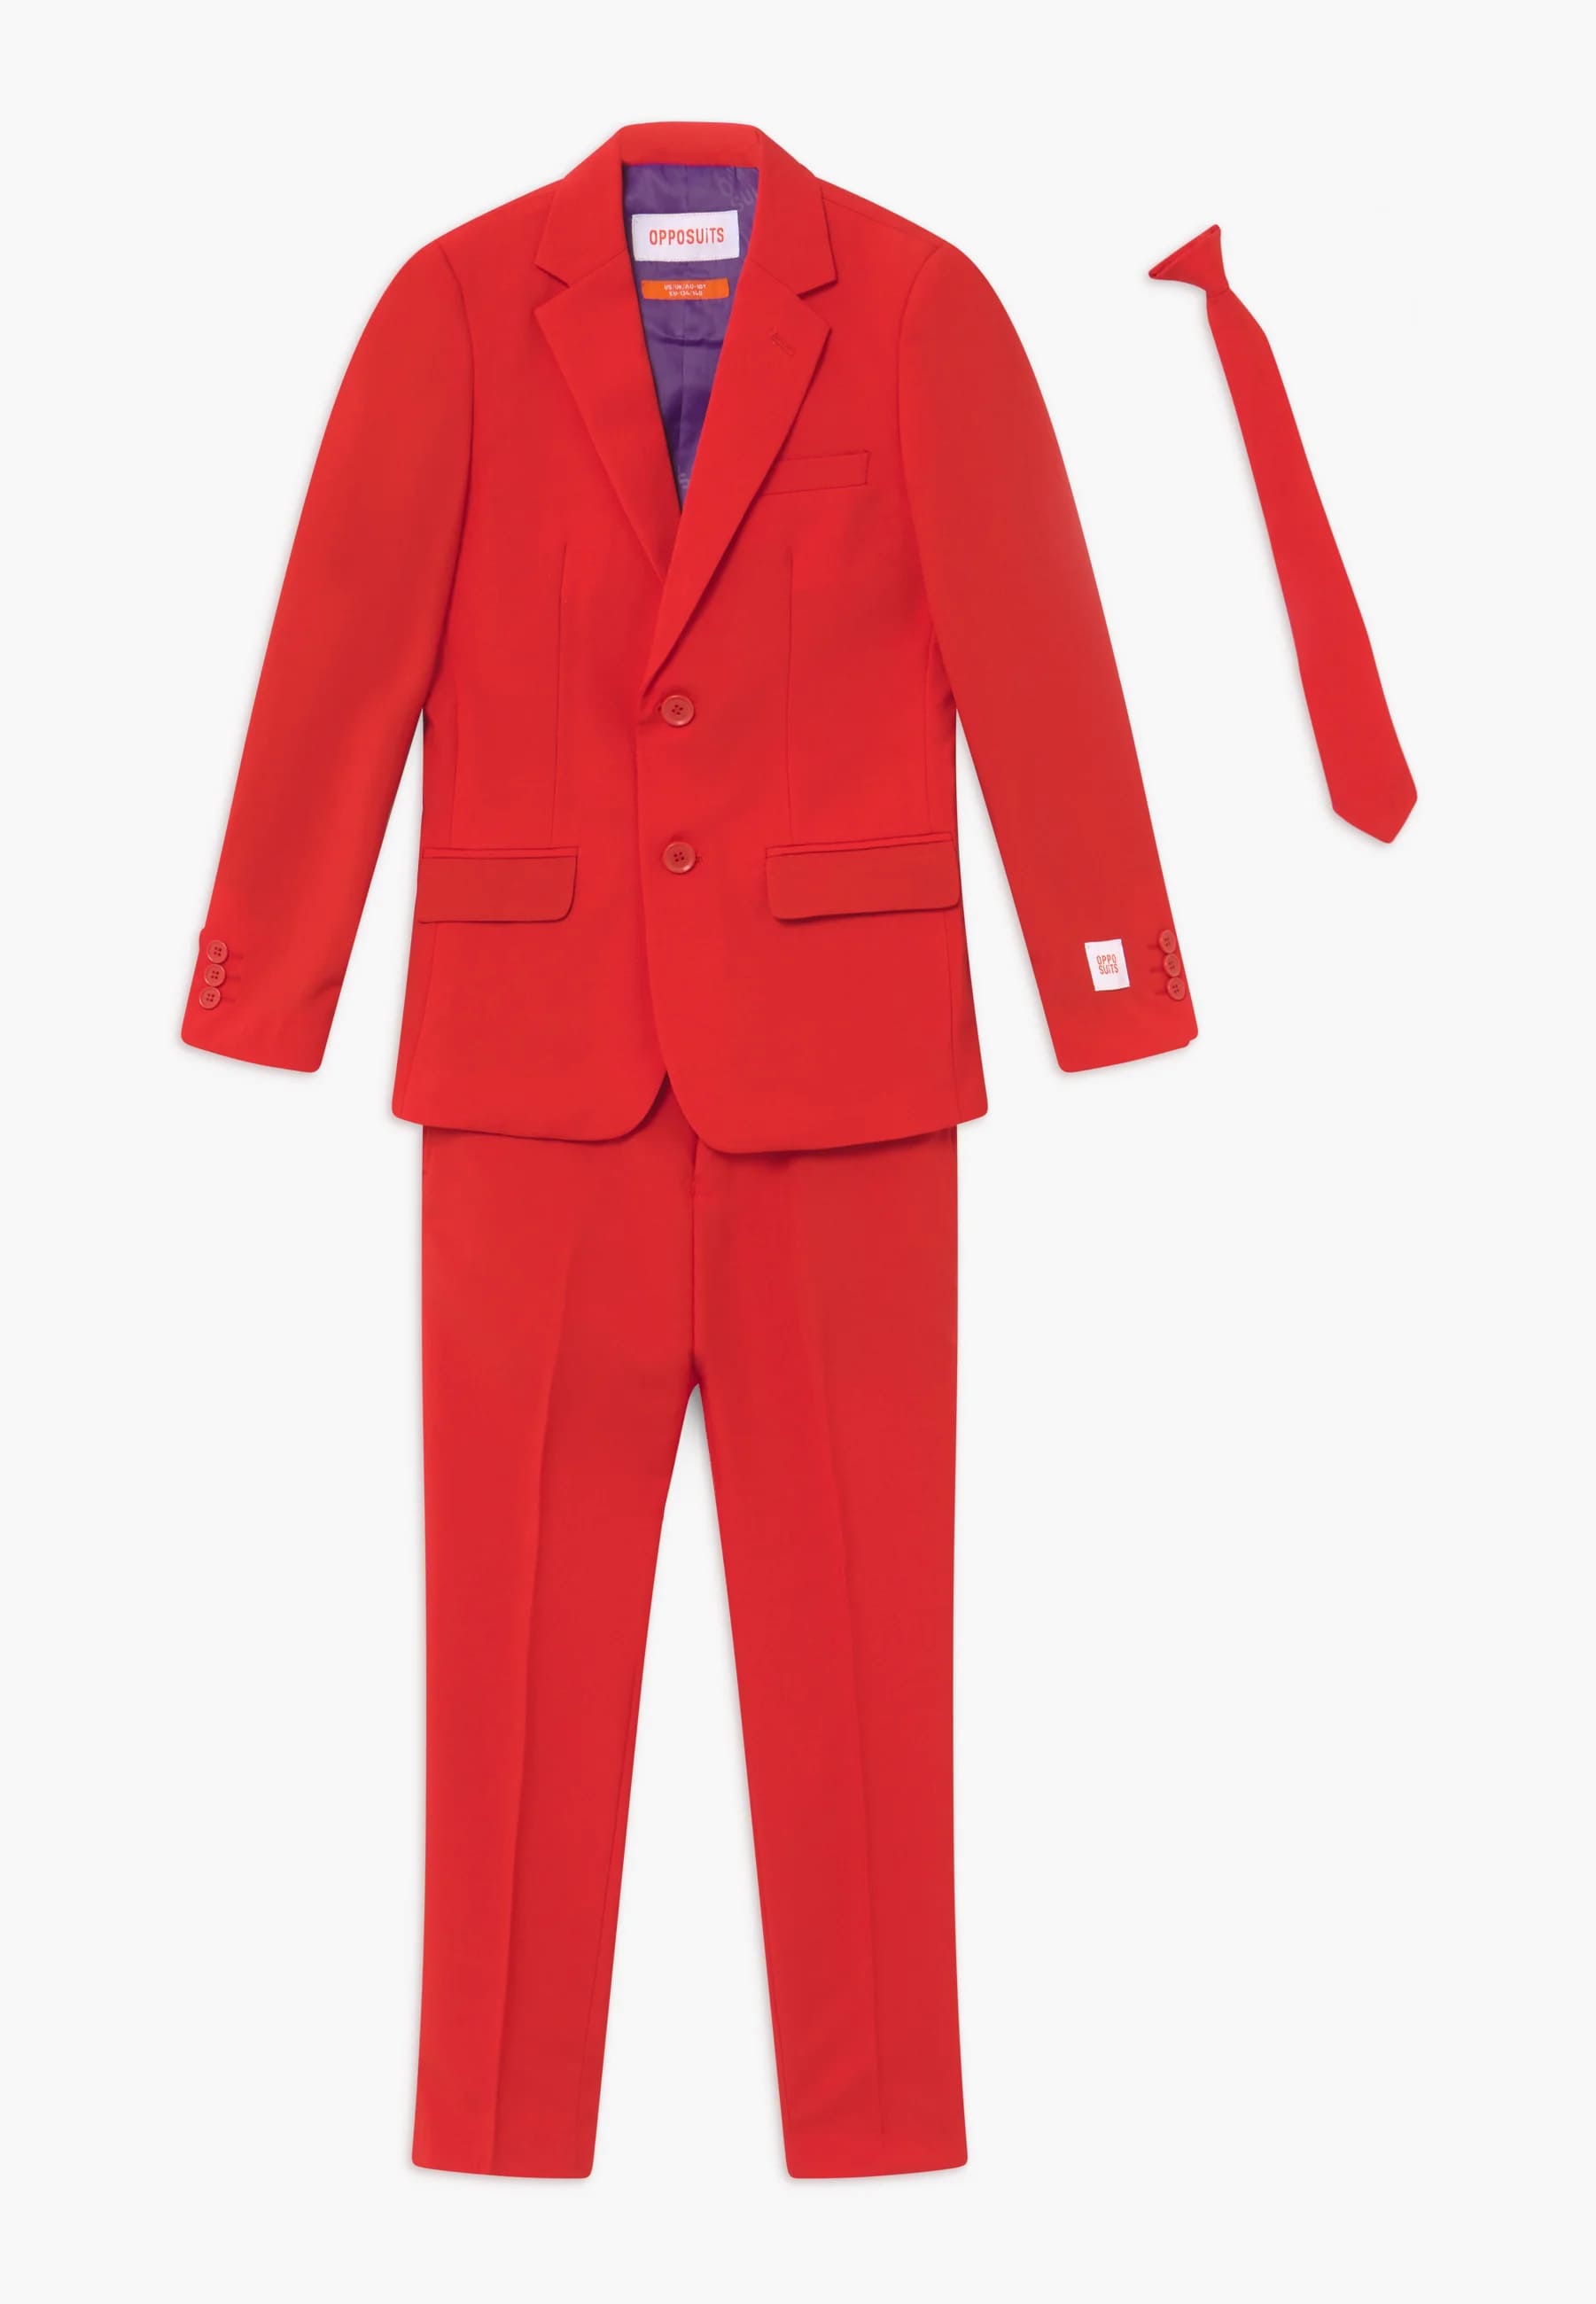 Комплект Opposuits, 3 предмета, красный комплект одежды malip пиджак и брюки классический стиль размер 32 синий